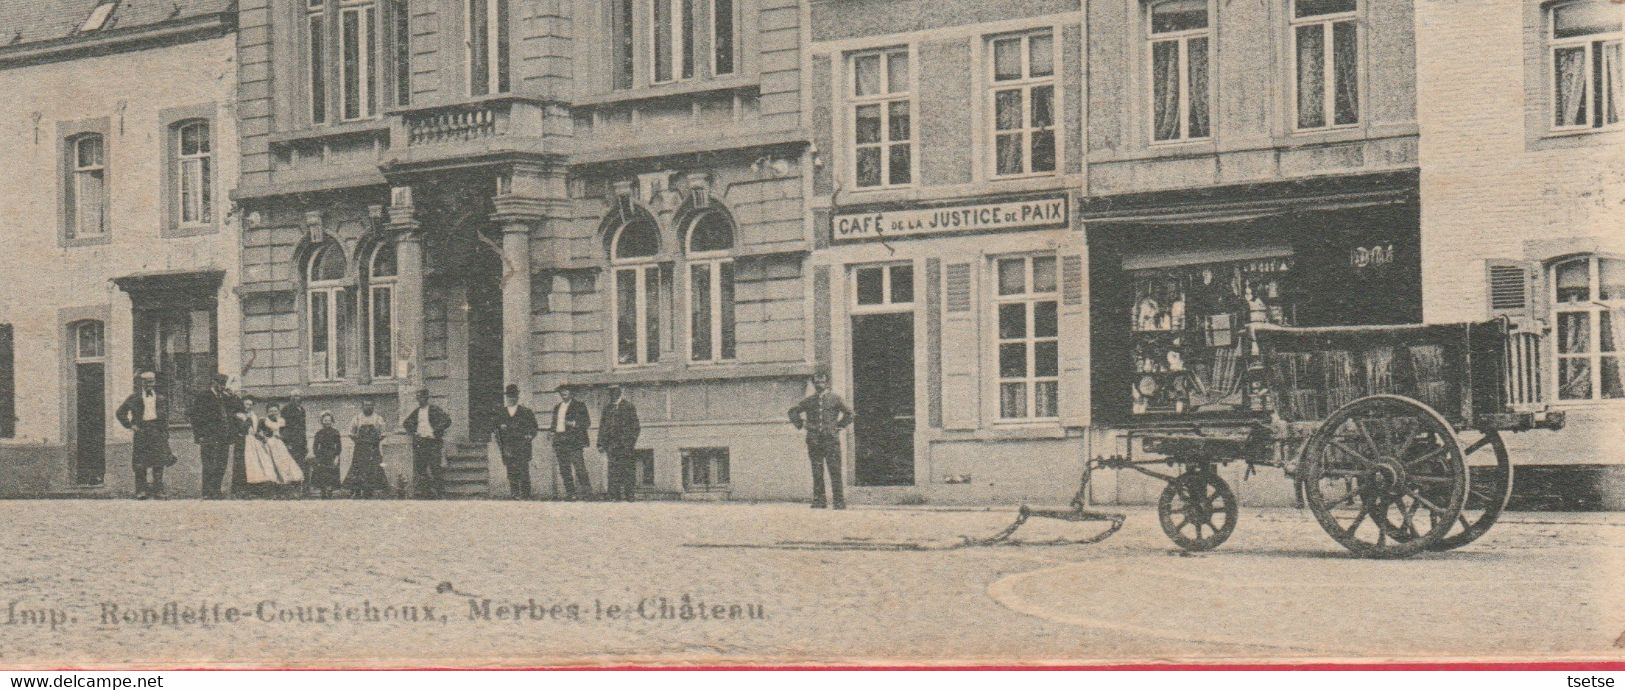 Merbes-le-Château - L'Hôtel Communal ... Belle Animation -1903 ( Voir Verso ) - Merbes-le-Château